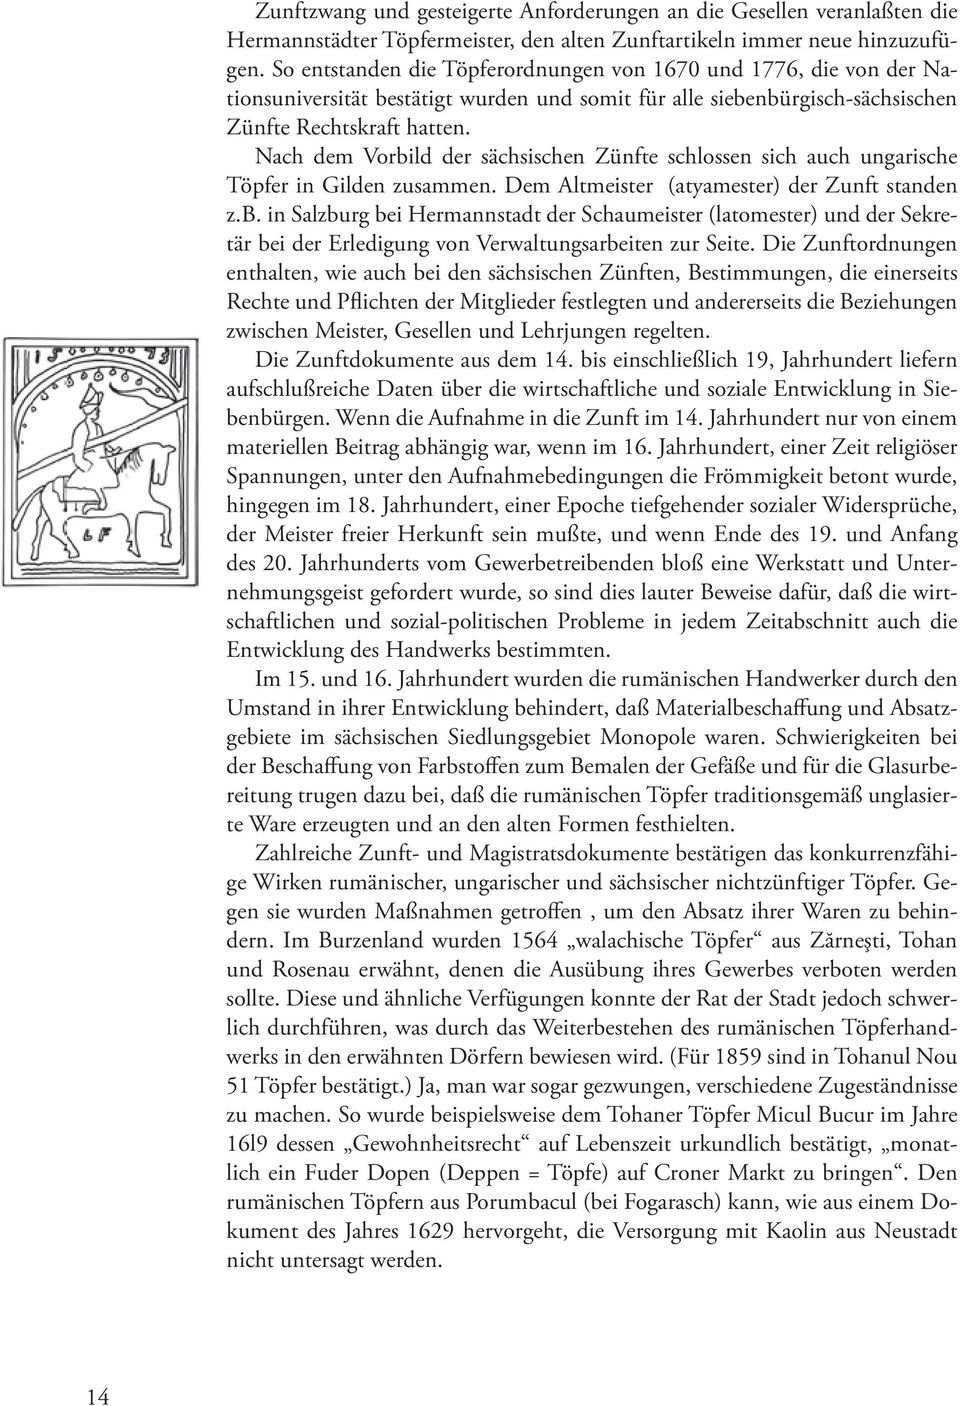 Nach dem Vorbild der sächsischen Zünfte schlossen sich auch ungarische Töpfer in Gilden zusammen. Dem Altmeister (atyamester) der Zunft standen z.b. in Salzburg bei Hermannstadt der Schaumeister (latomester) und der Sekretär bei der Erledigung von Verwaltungsarbeiten zur Seite.